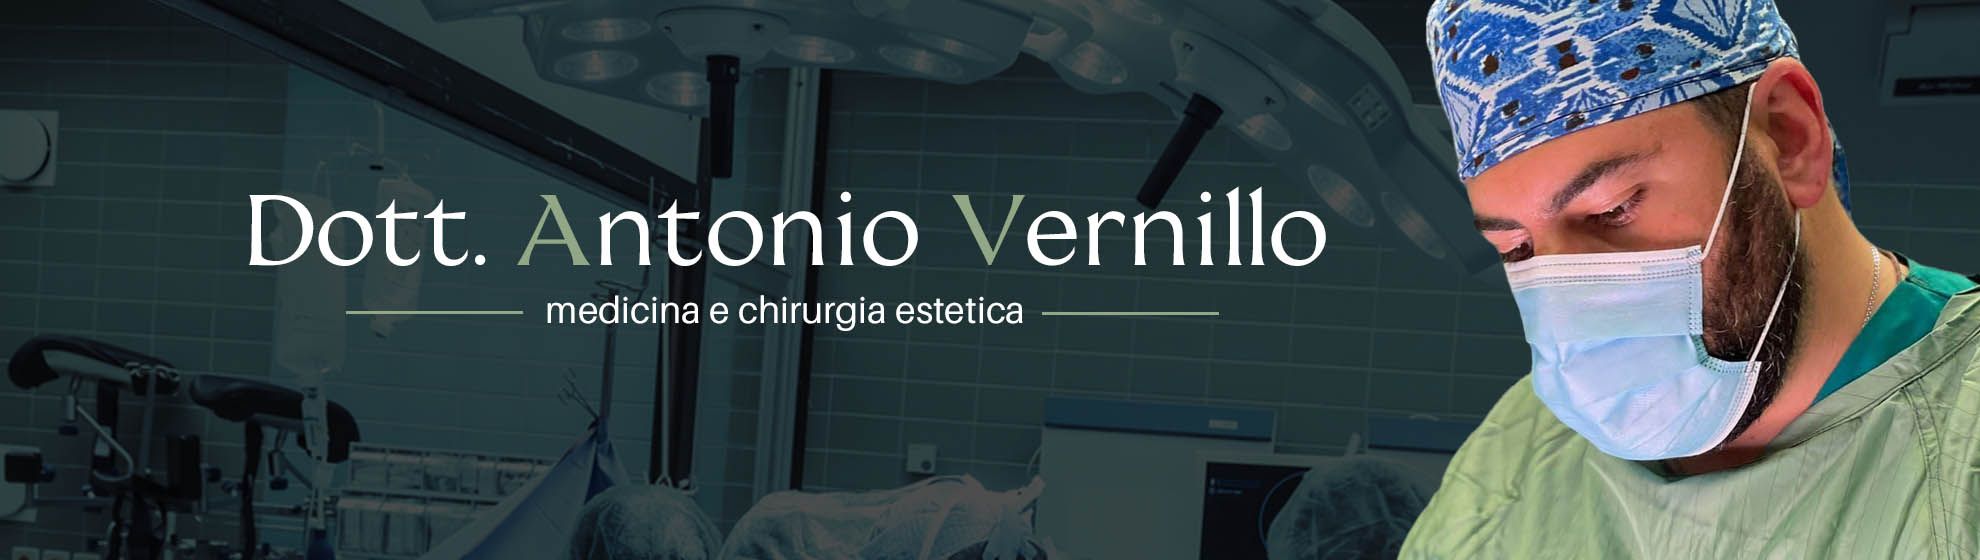 Dott. Antonio Vernillo